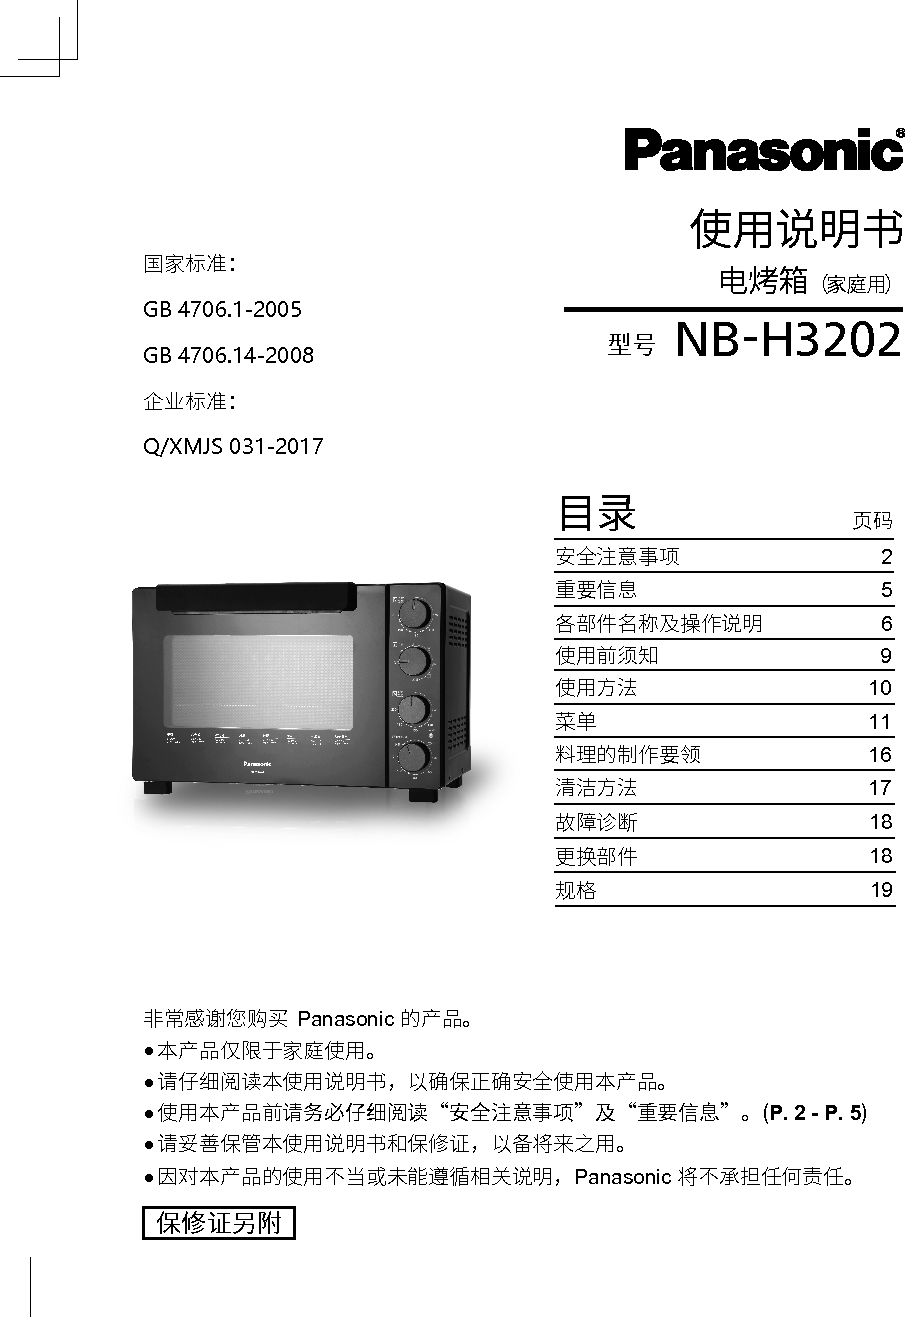 松下 Panasonic NB-H3202 使用说明书 封面